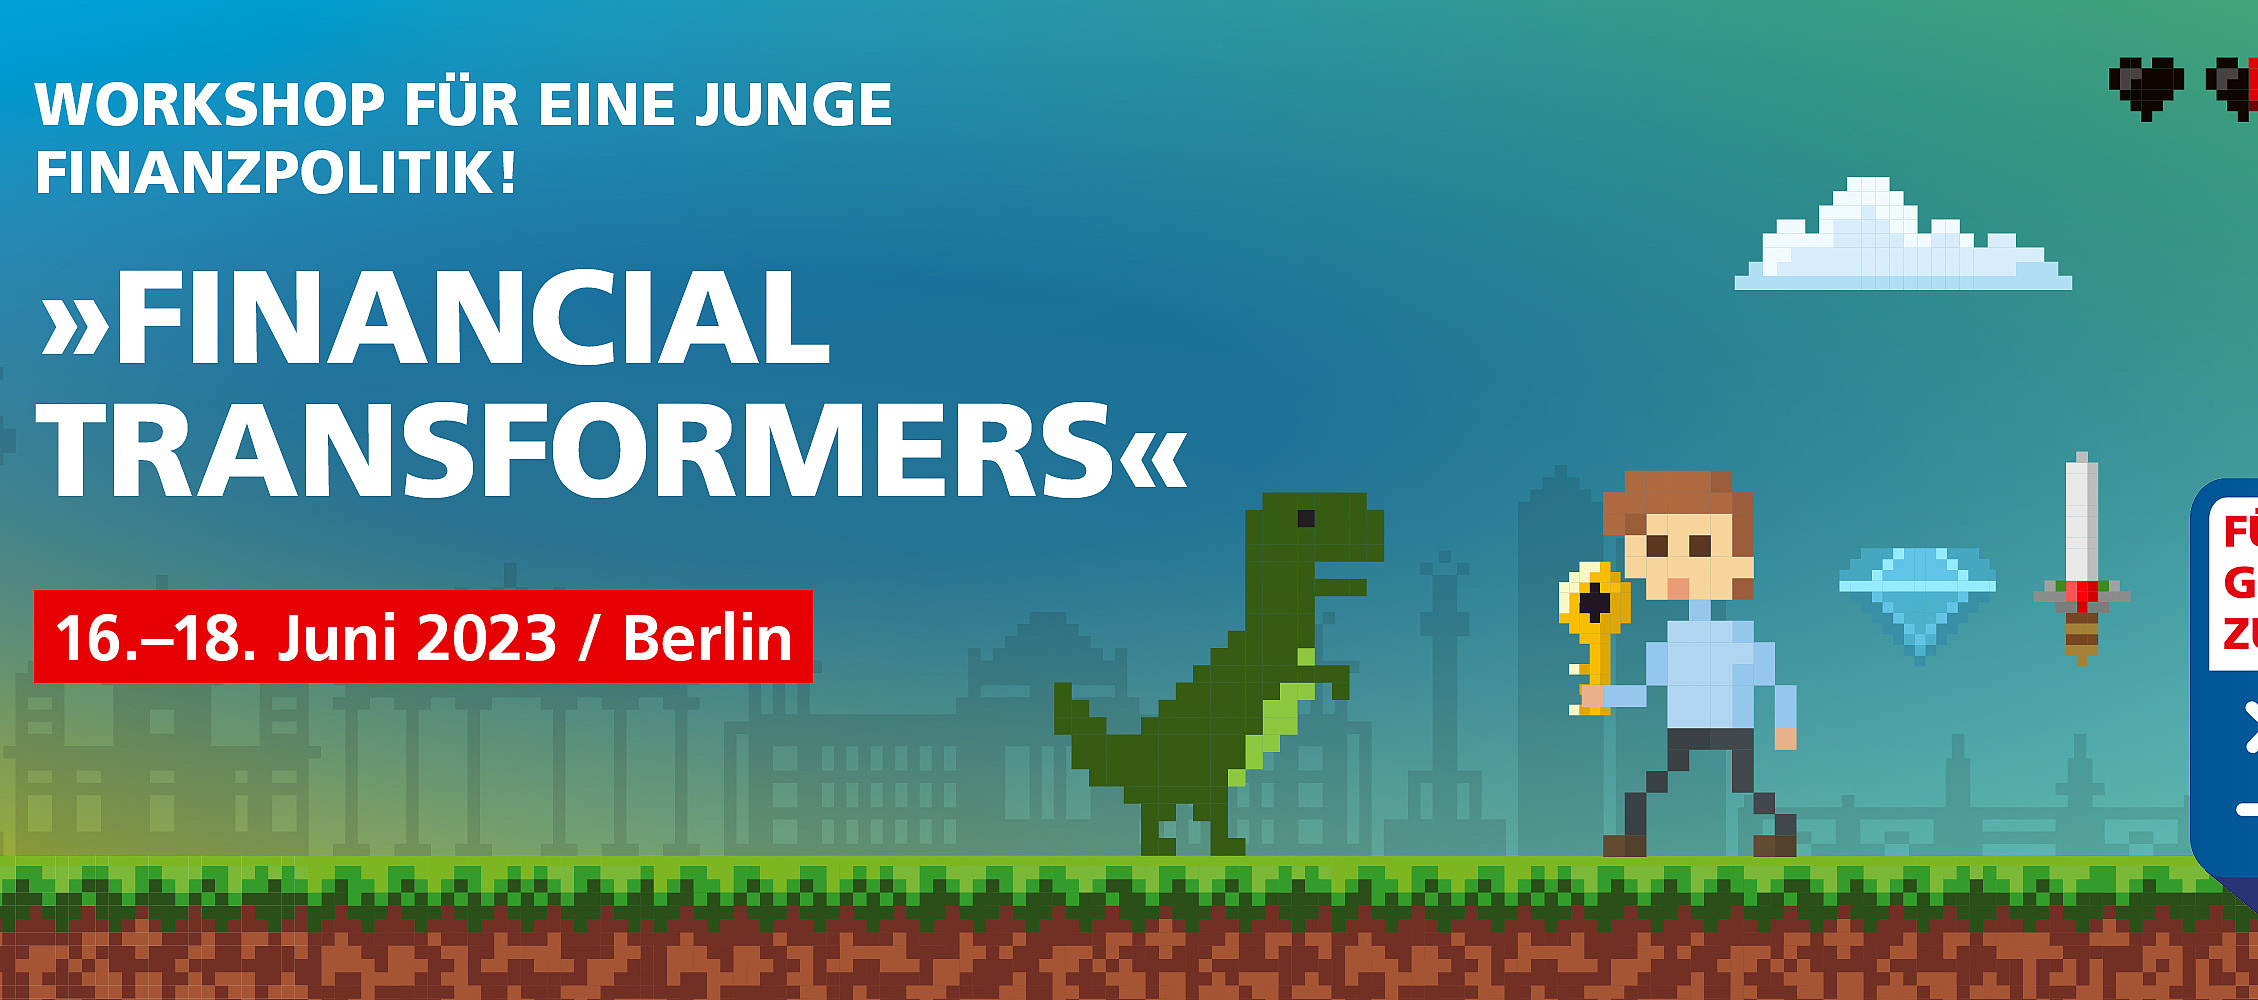 Infobild für den Financial Transformers Workshop vom 16. bis 18. Juni in Berlin. Das Bild zeigt eine 2D-Computerspielwelt, in der sich ein Mensch und ein Dinosauerier gegenüberstehen. Im Hintegrund ist die Skyline von Berlin zu erkennen.